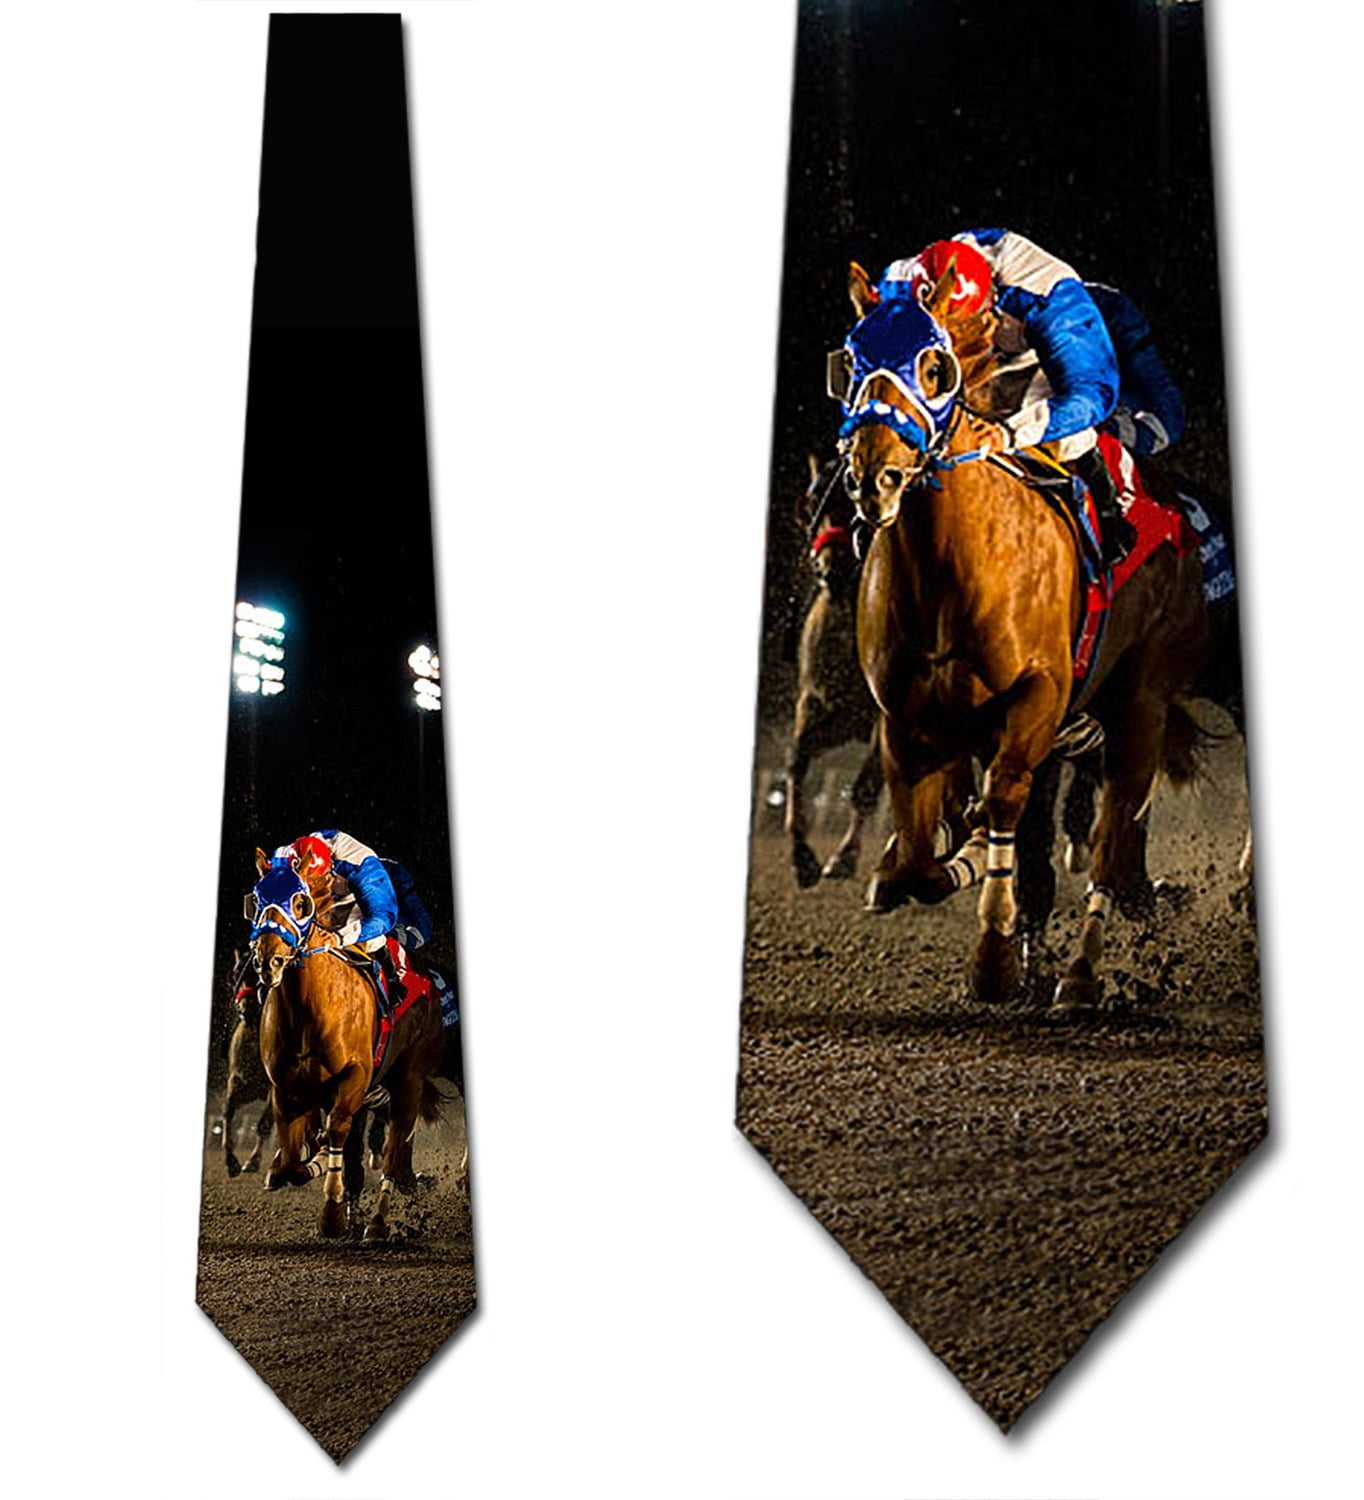 Horse racing tie